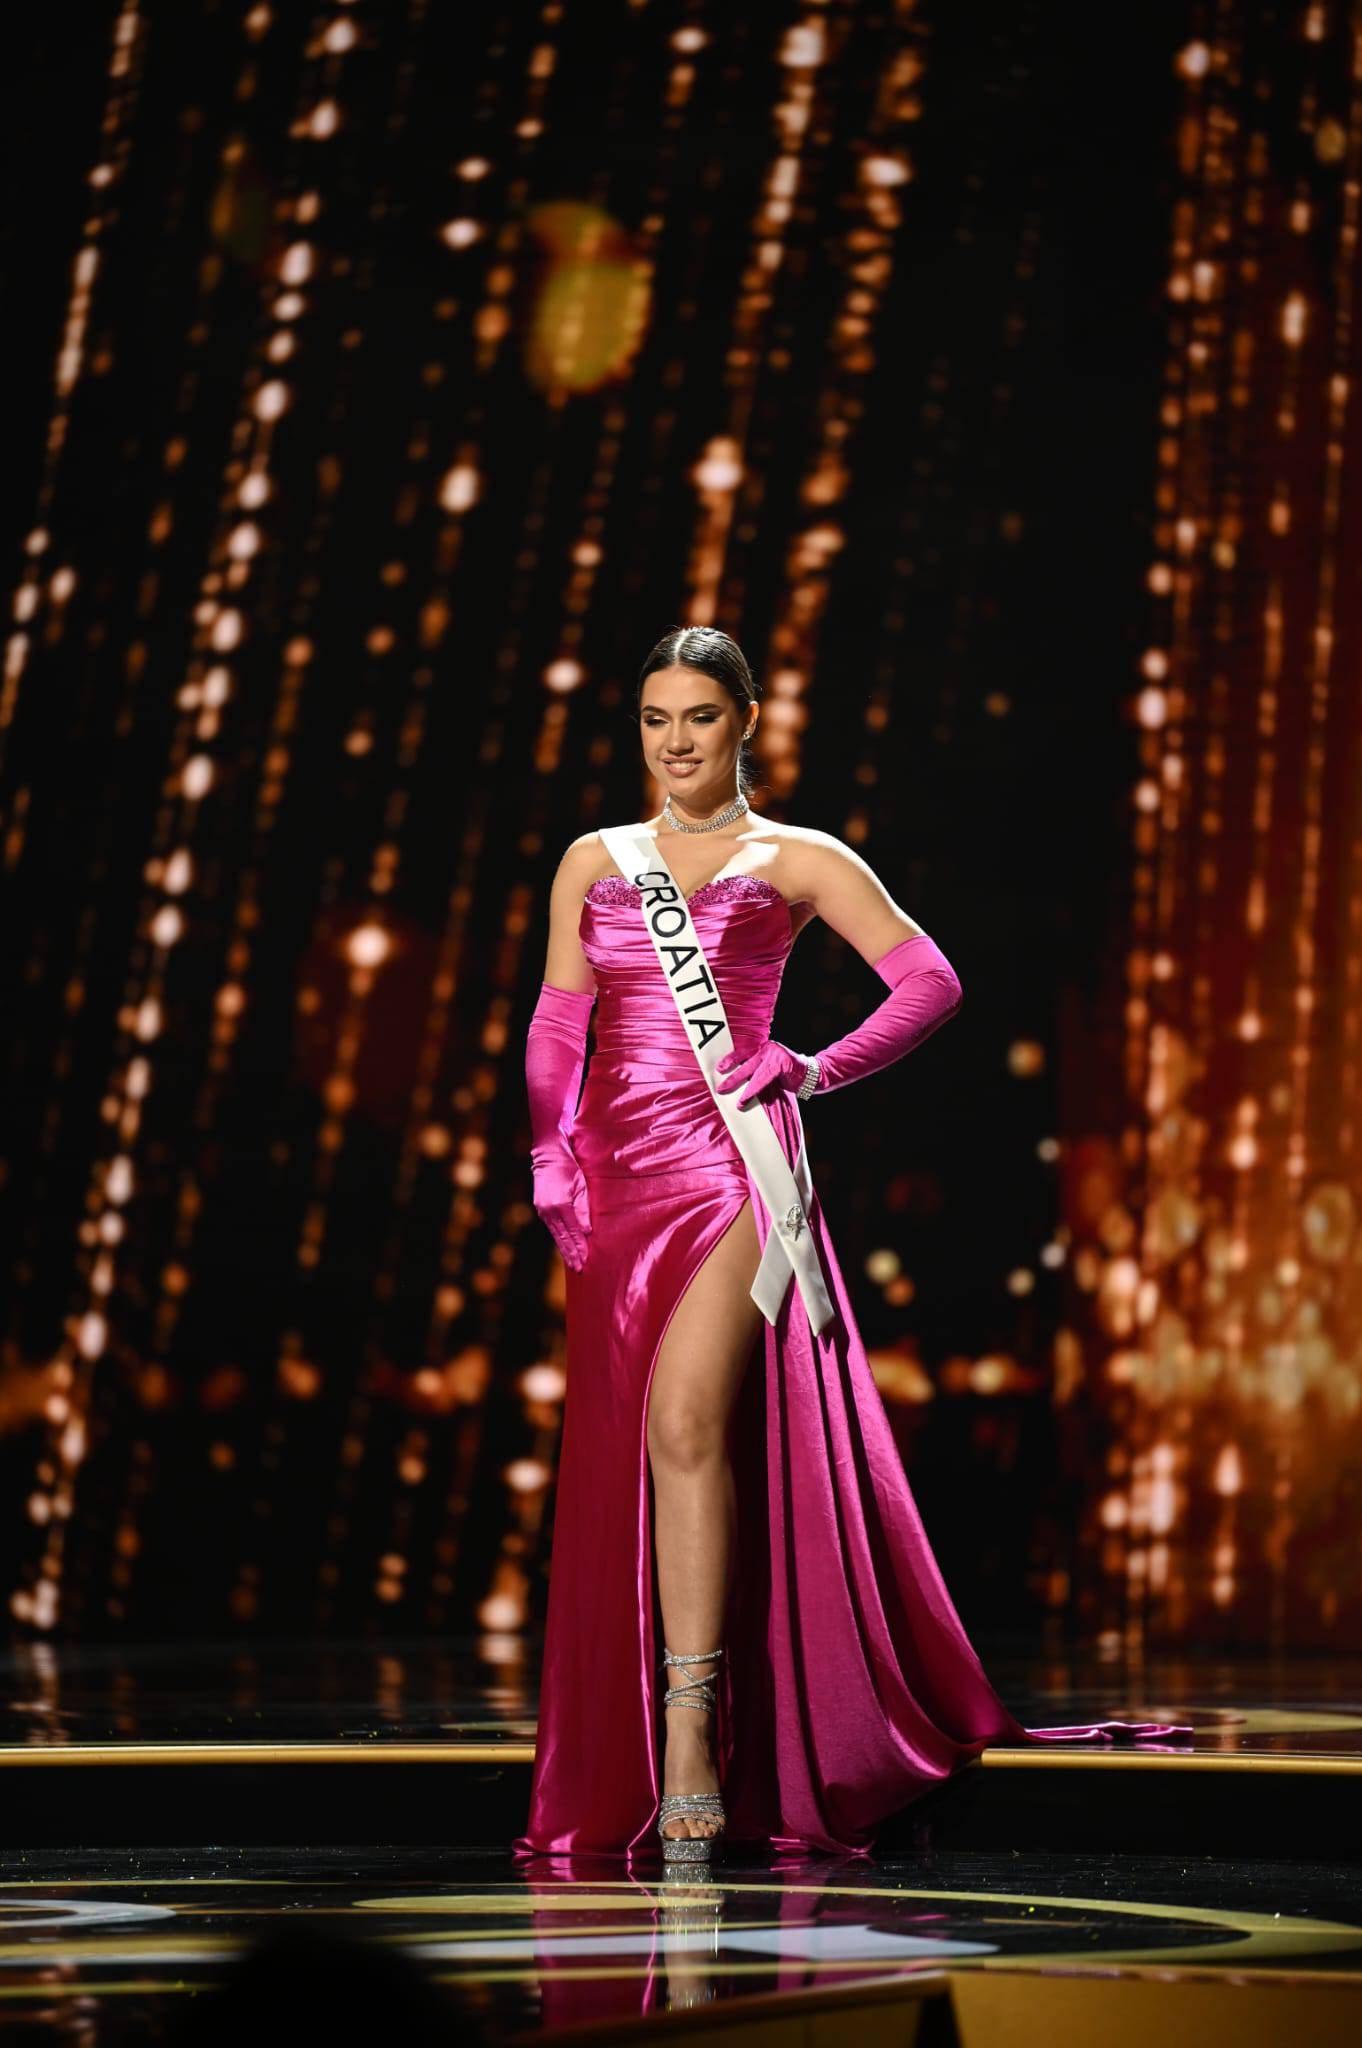 Hrvatska predstavnica o finalu Miss Universe: Ulazak pojedinih zemalja u prvih 16 me iznenadio